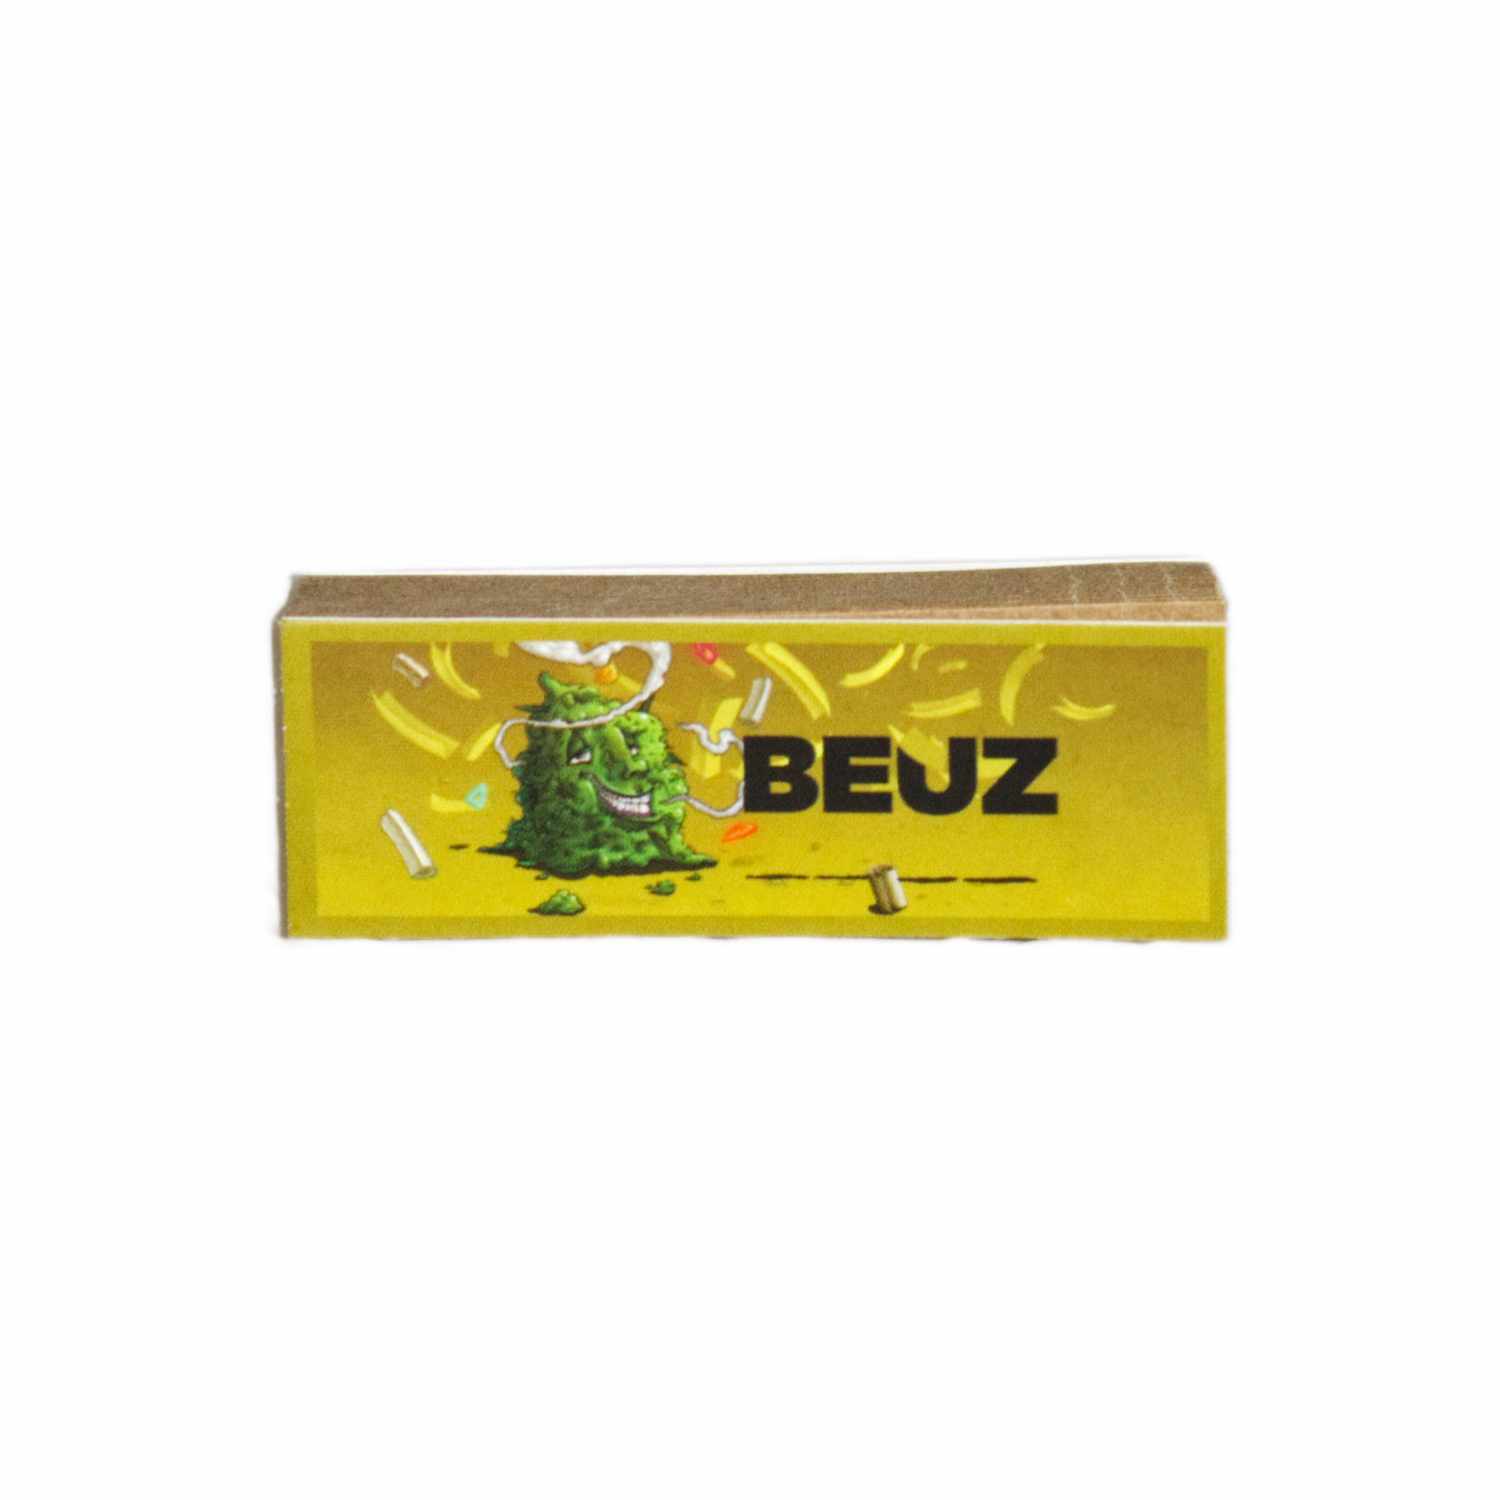 Filtres en carton “Beuz” Brown Edition Spéciale perforés